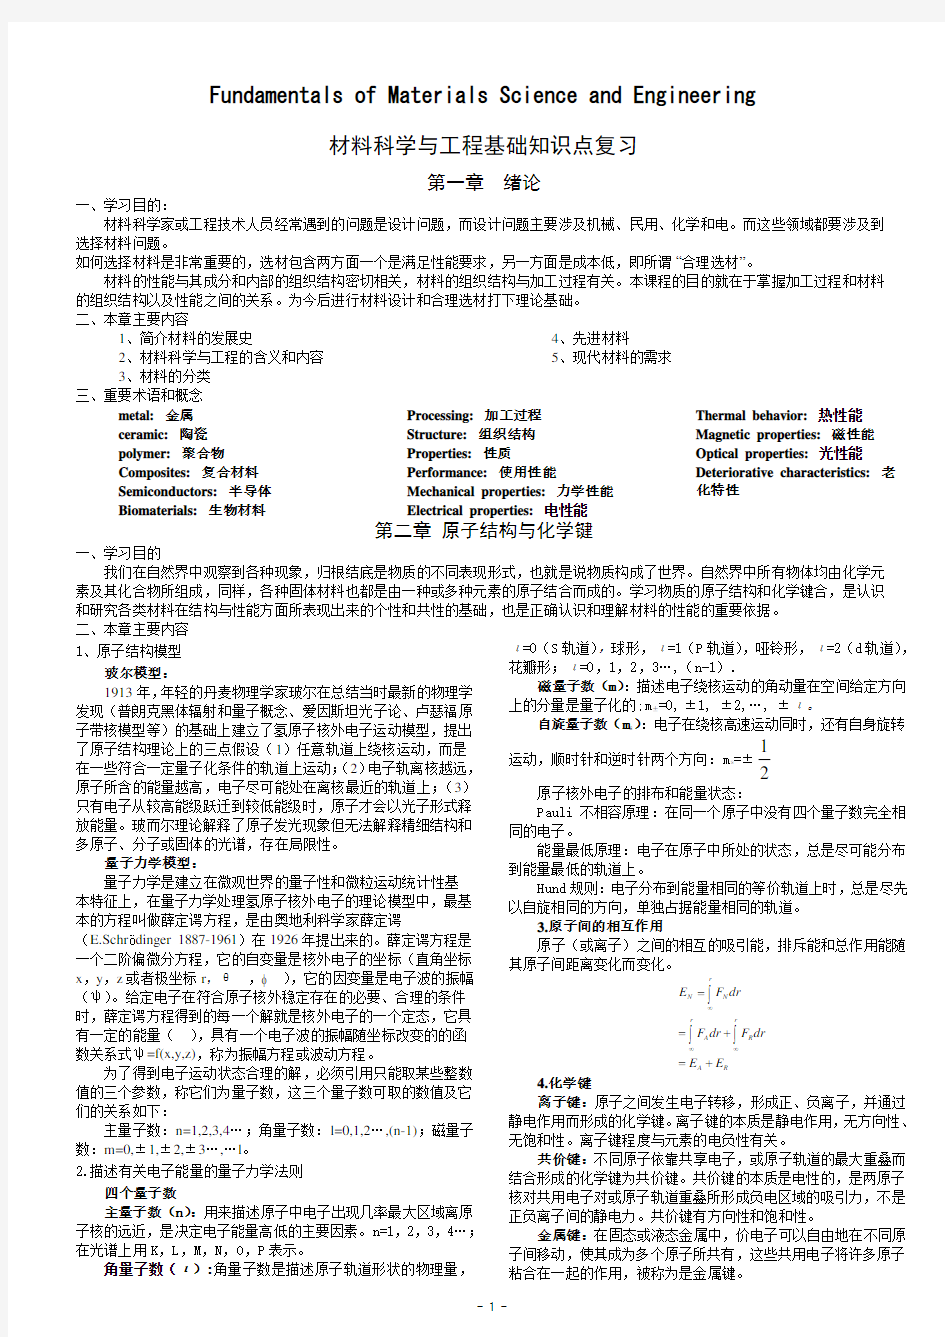 材料科学与工程基础知识点(打印版)英汉双语版